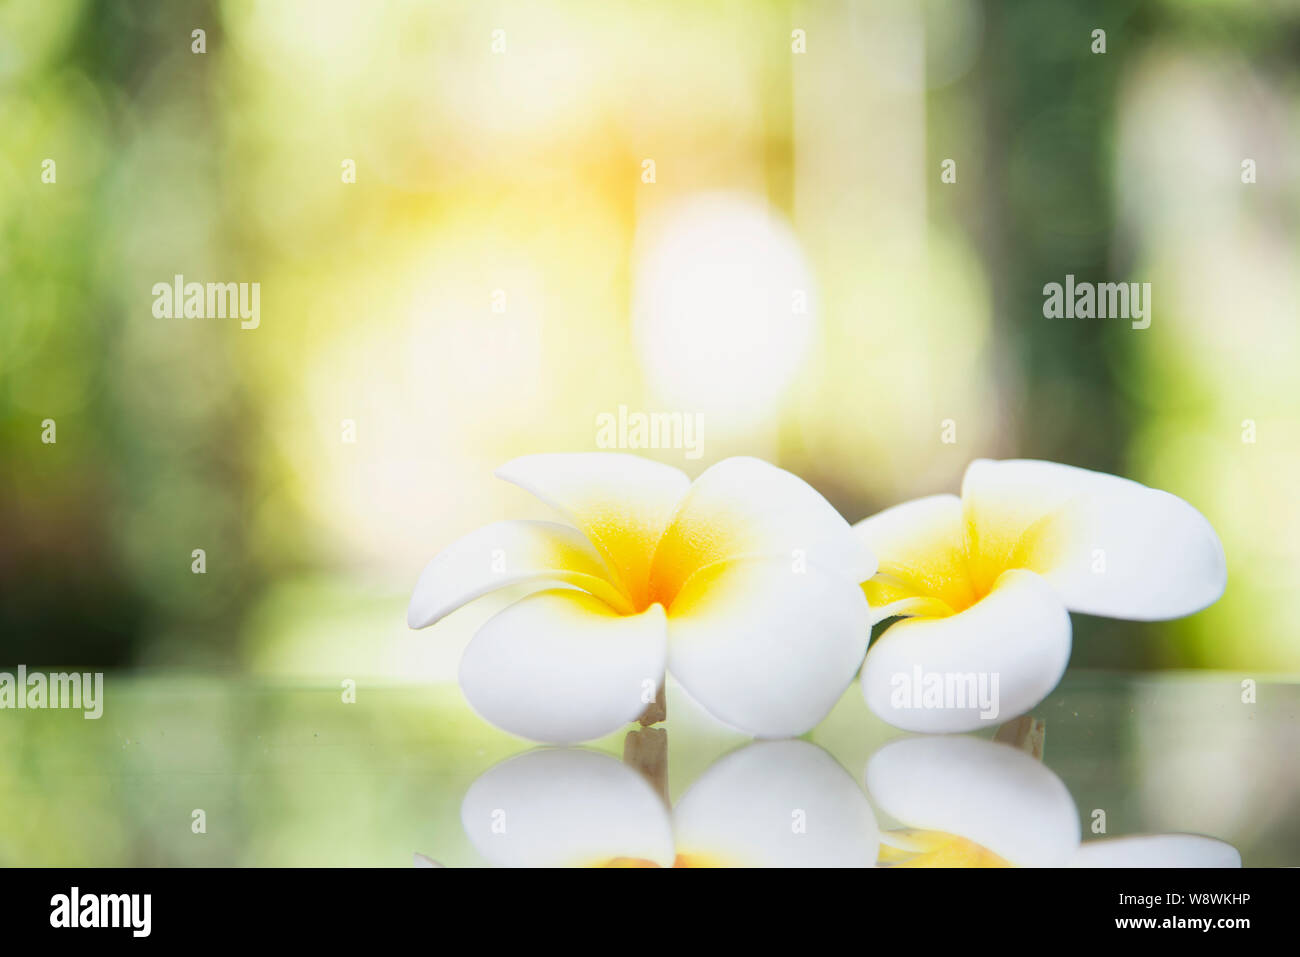 Warm yellow plumeria flower in green garden background - flower in nature background concept Stock Photo